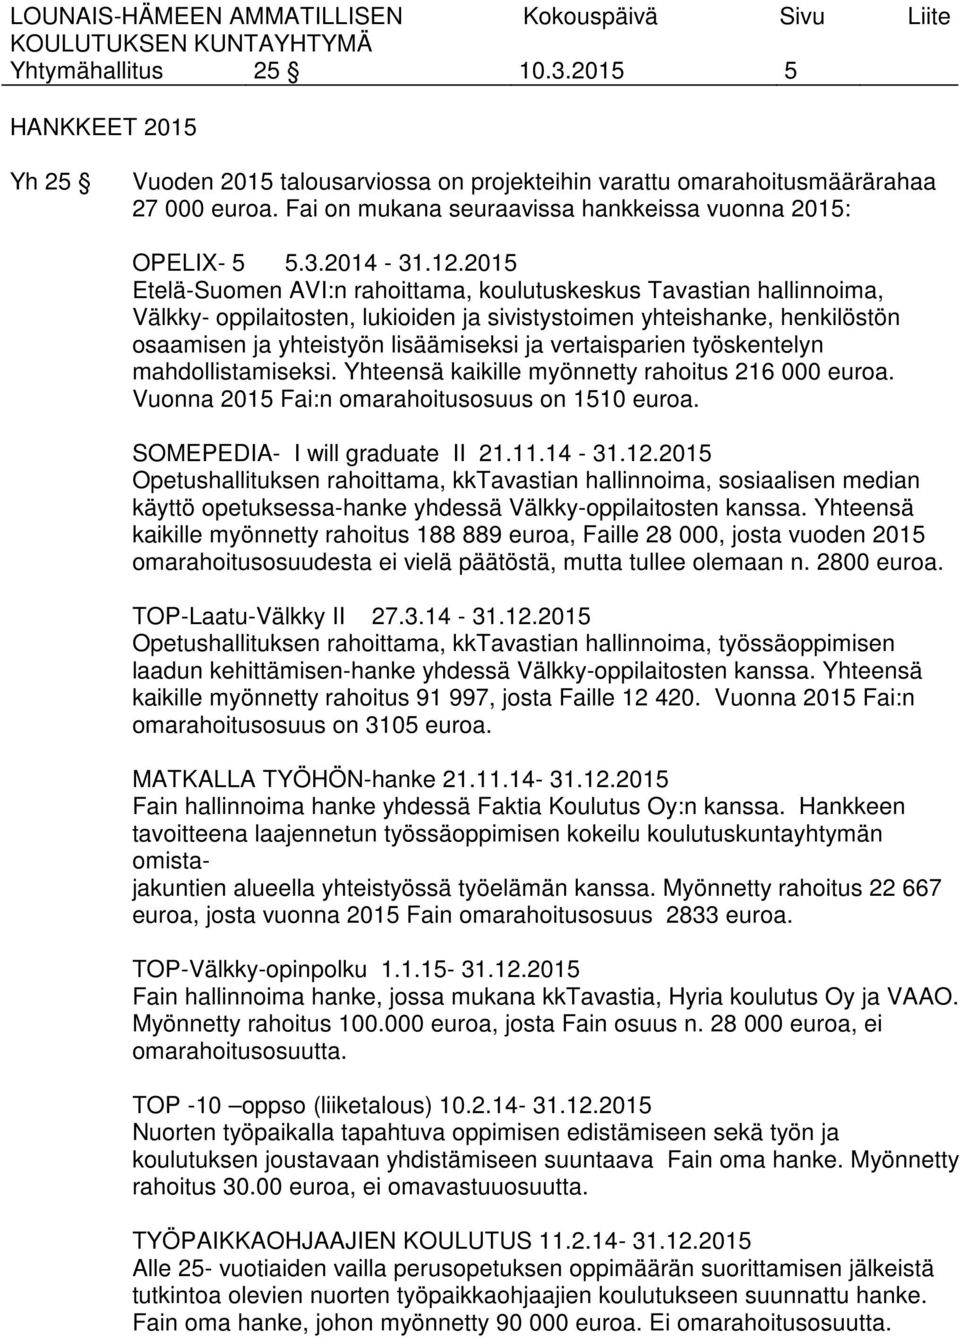 2015 Etelä-Suomen AVI:n rahoittama, koulutuskeskus Tavastian hallinnoima, Välkky- oppilaitosten, lukioiden ja sivistystoimen yhteishanke, henkilöstön osaamisen ja yhteistyön lisäämiseksi ja